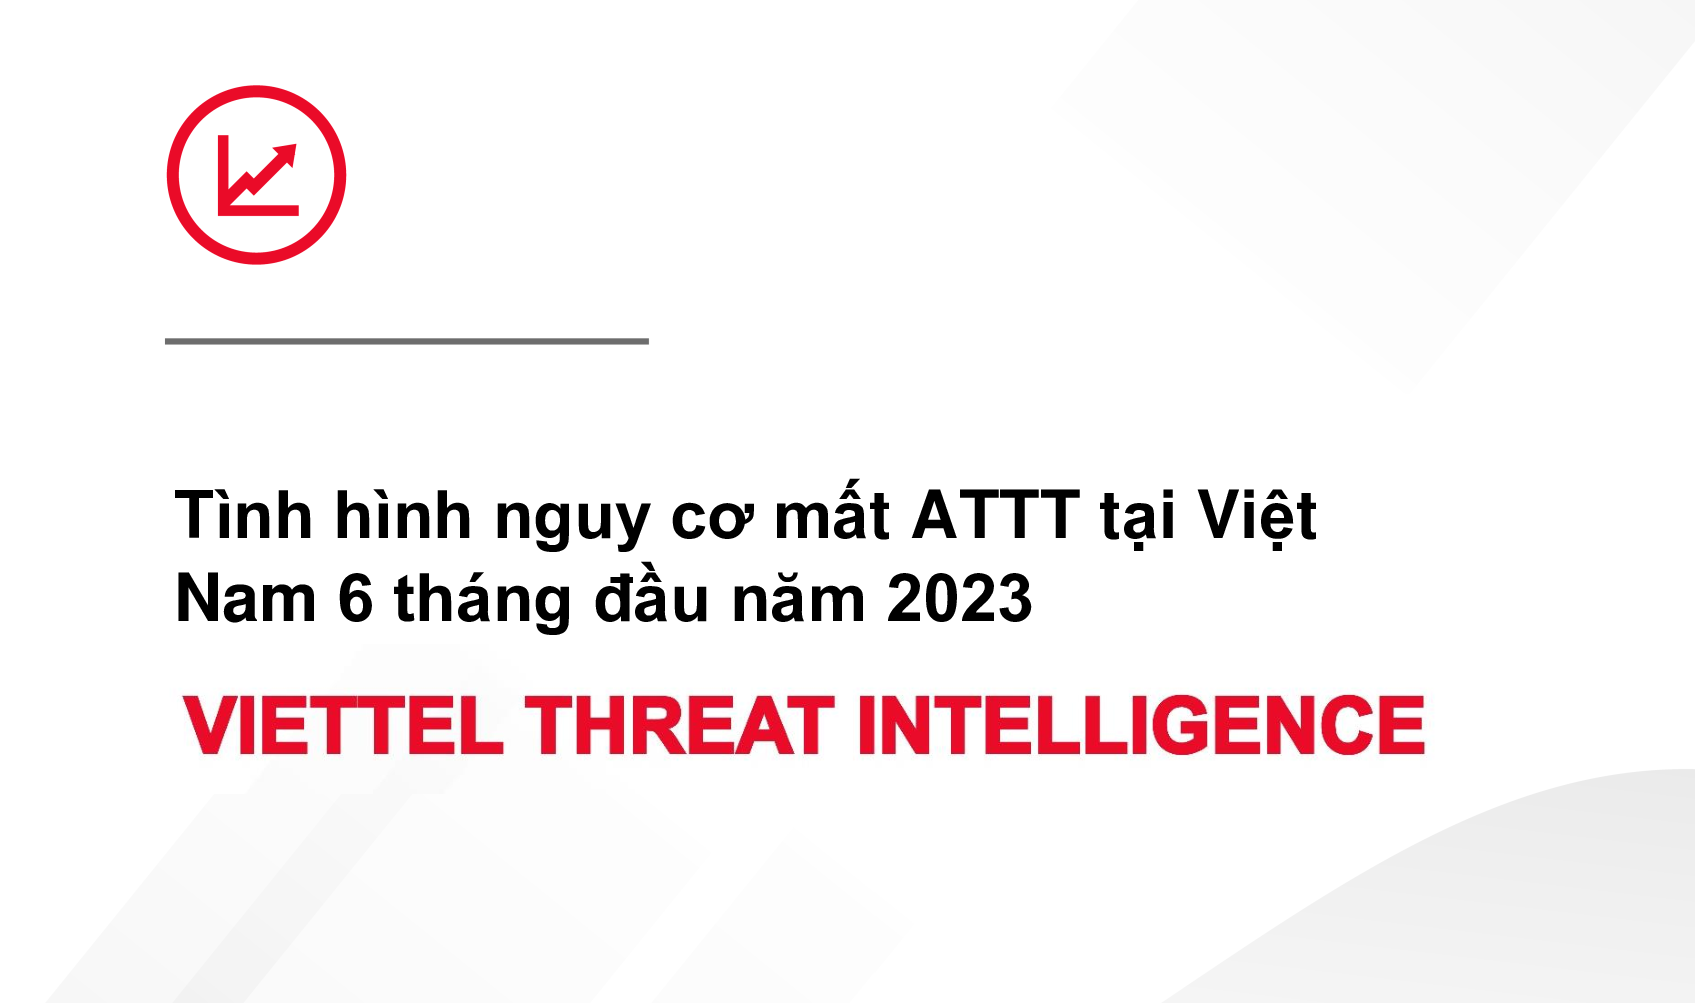 Tình hình nguy cơ mất ATTT tại Việt Nam 6 tháng đầu năm 2023